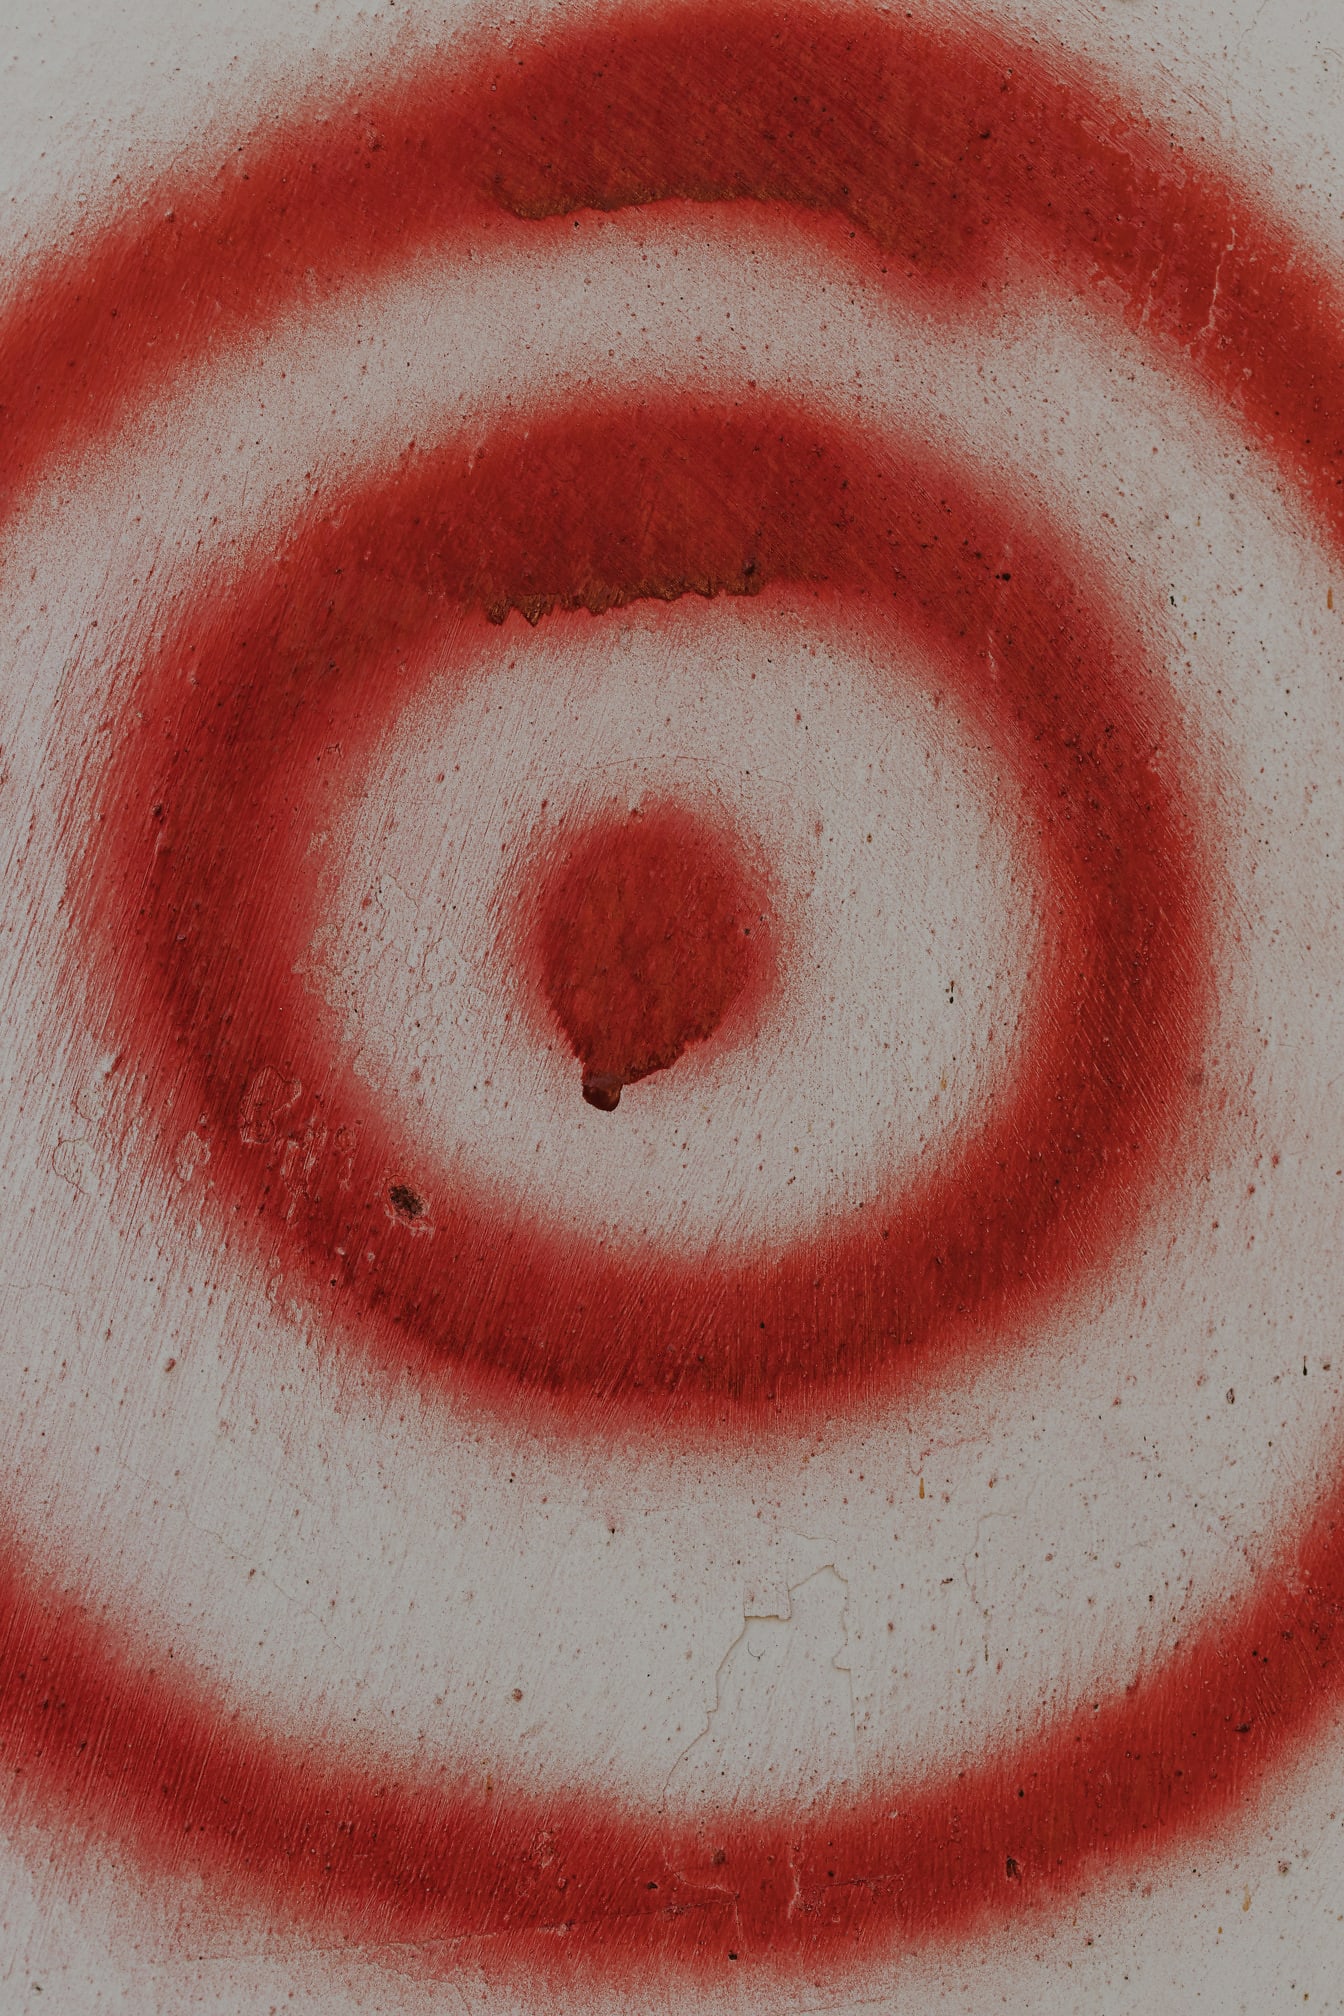 Cerchi di vernice rosso scuro su texture ravvicinata parete sporca beige